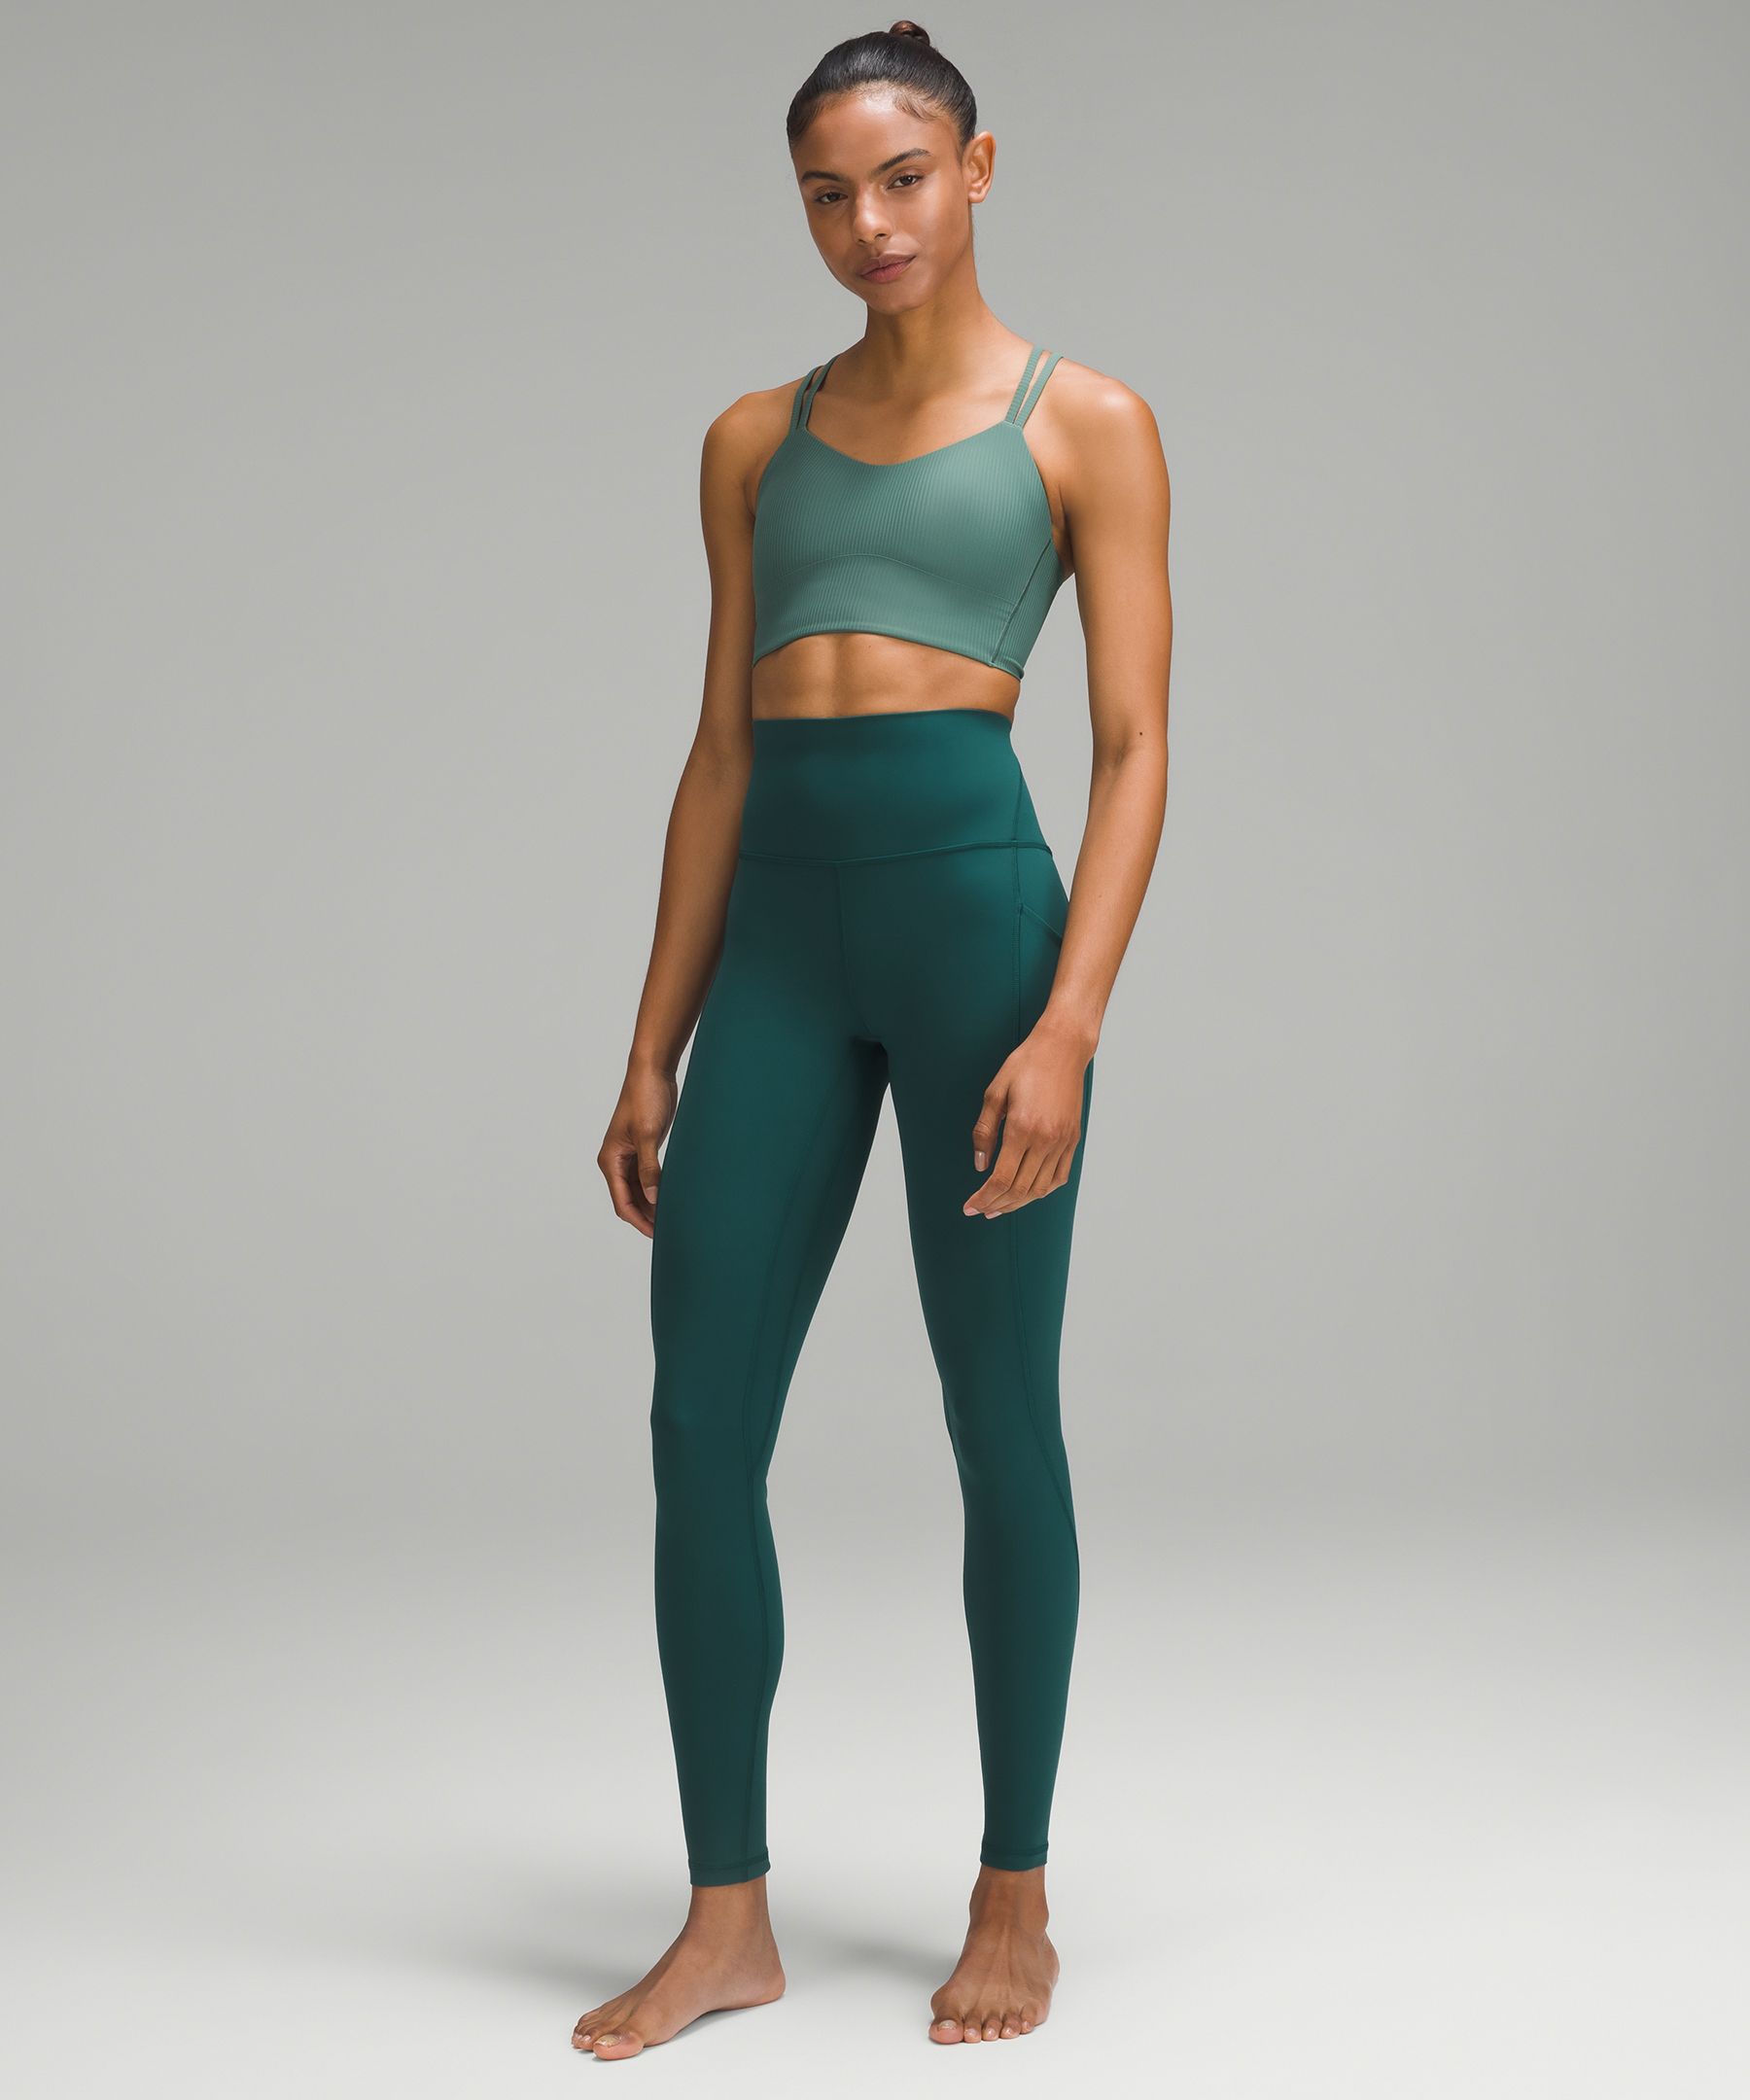 Lululemon Align™ High-Rise Pant with Pockets 28 Website - Rainforest Green  Womens Leggings